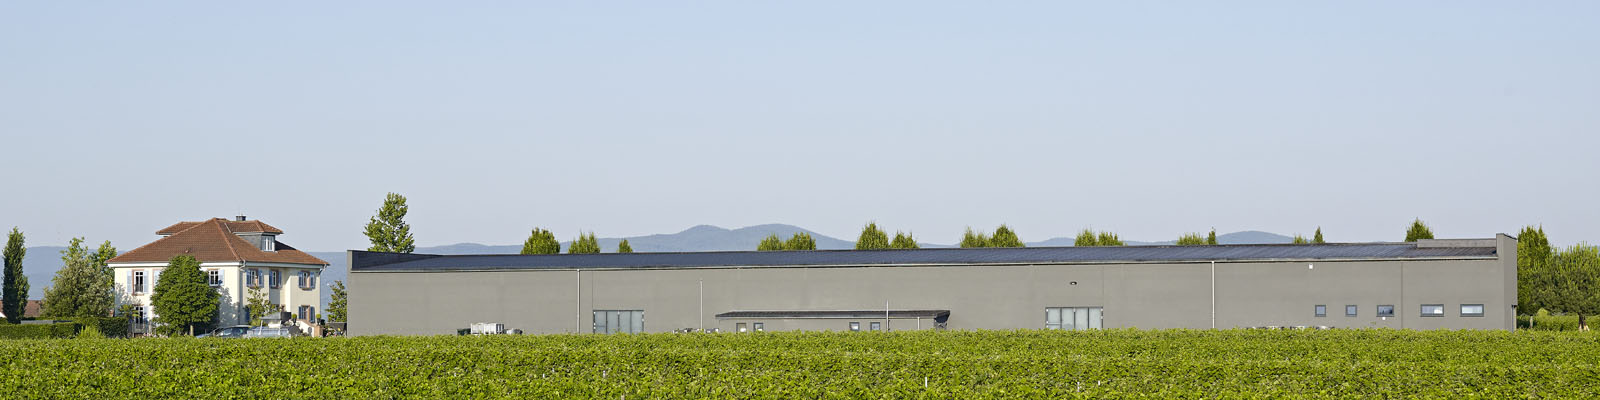 Schneider vineyard, Ellerstadt